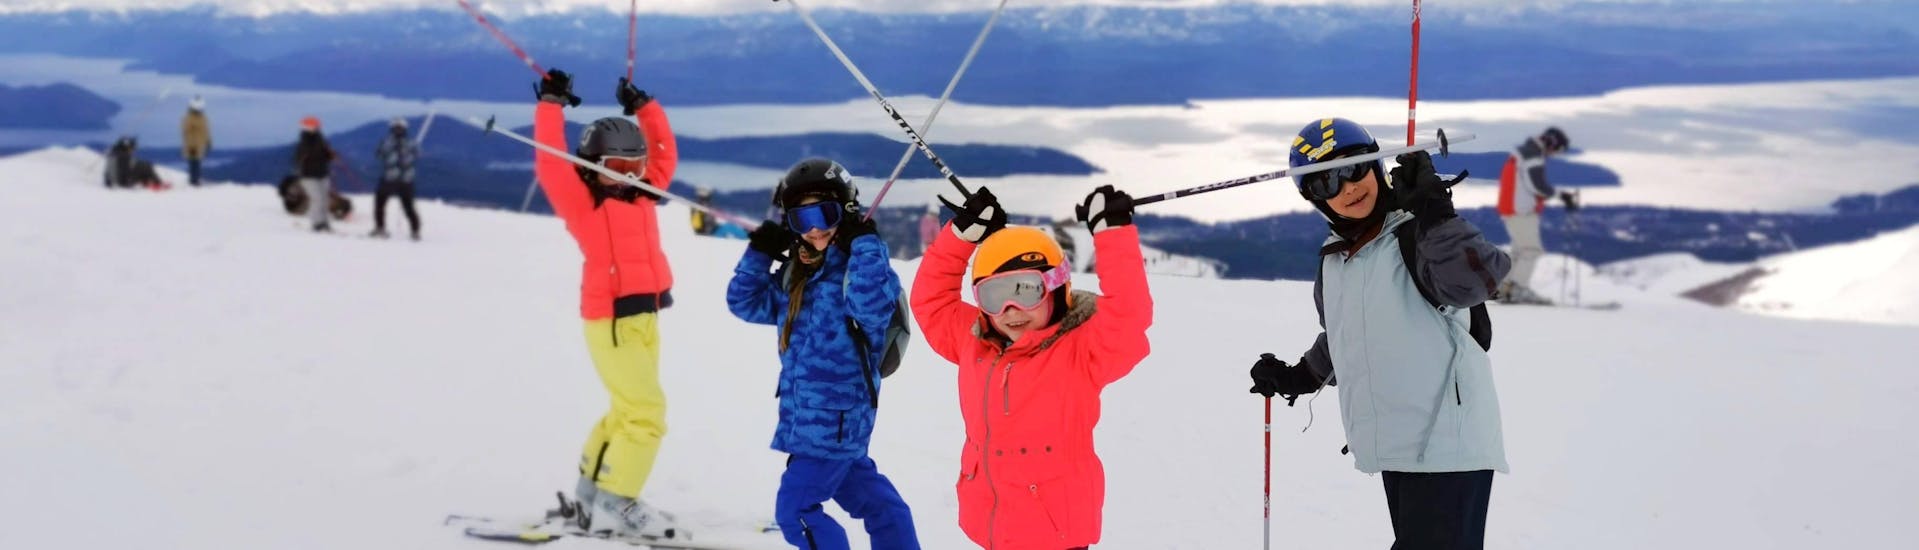 Die Kinder genießen den tollen Ausblick auf die Berge gemeinsam mit ihrem Skilehrer von Ski Life Escuela de Esquí Baqueira während ihrem Privaten Kinder-Skikurs für alle Levels.